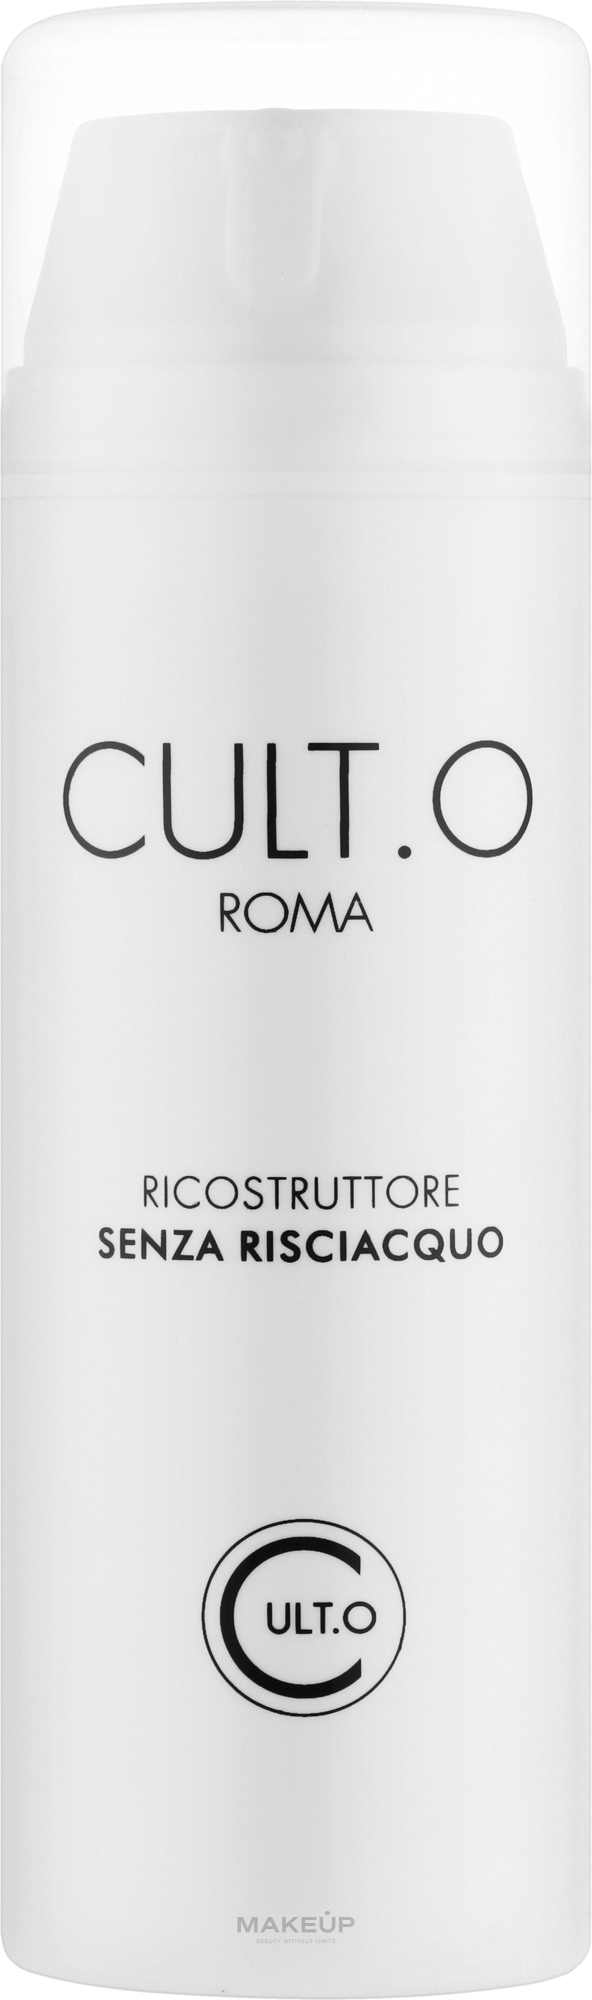 Krem zwiększający objętość włosów - Cult.O Roma Crema Voumizante Senza Risciacquo — Zdjęcie 150 ml